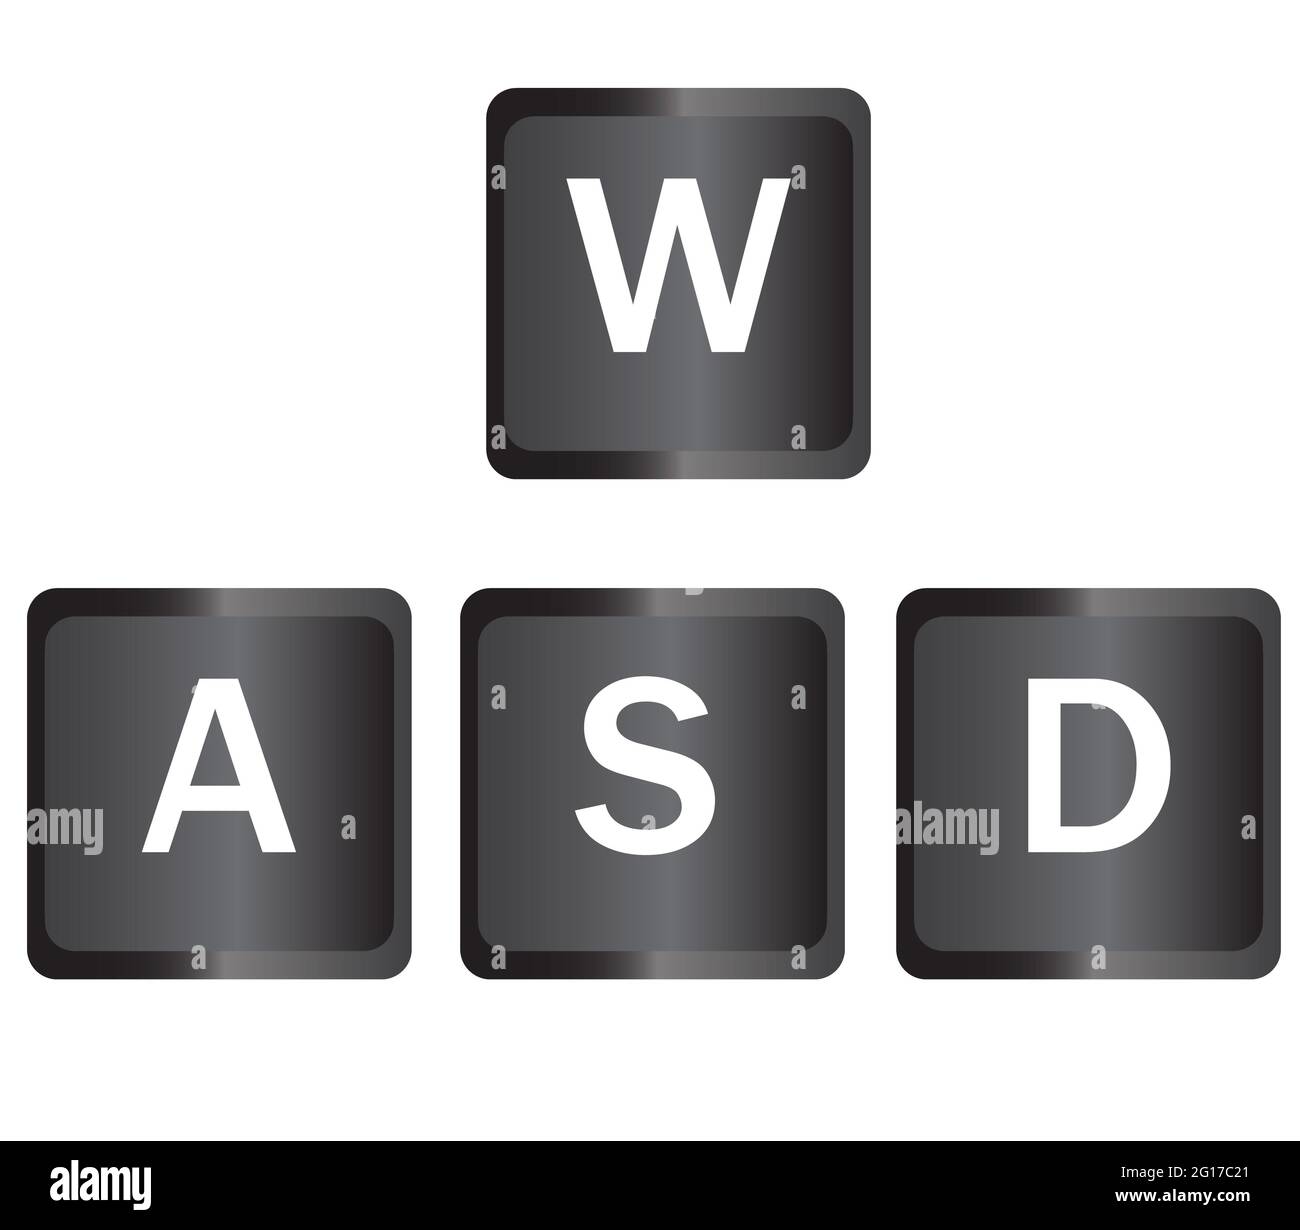 Botones de juego del teclado WASD. Símbolo de teclado de ordenador WASD.  Símbolo de juegos y ciberdeporte. Estilo plano Fotografía de stock - Alamy